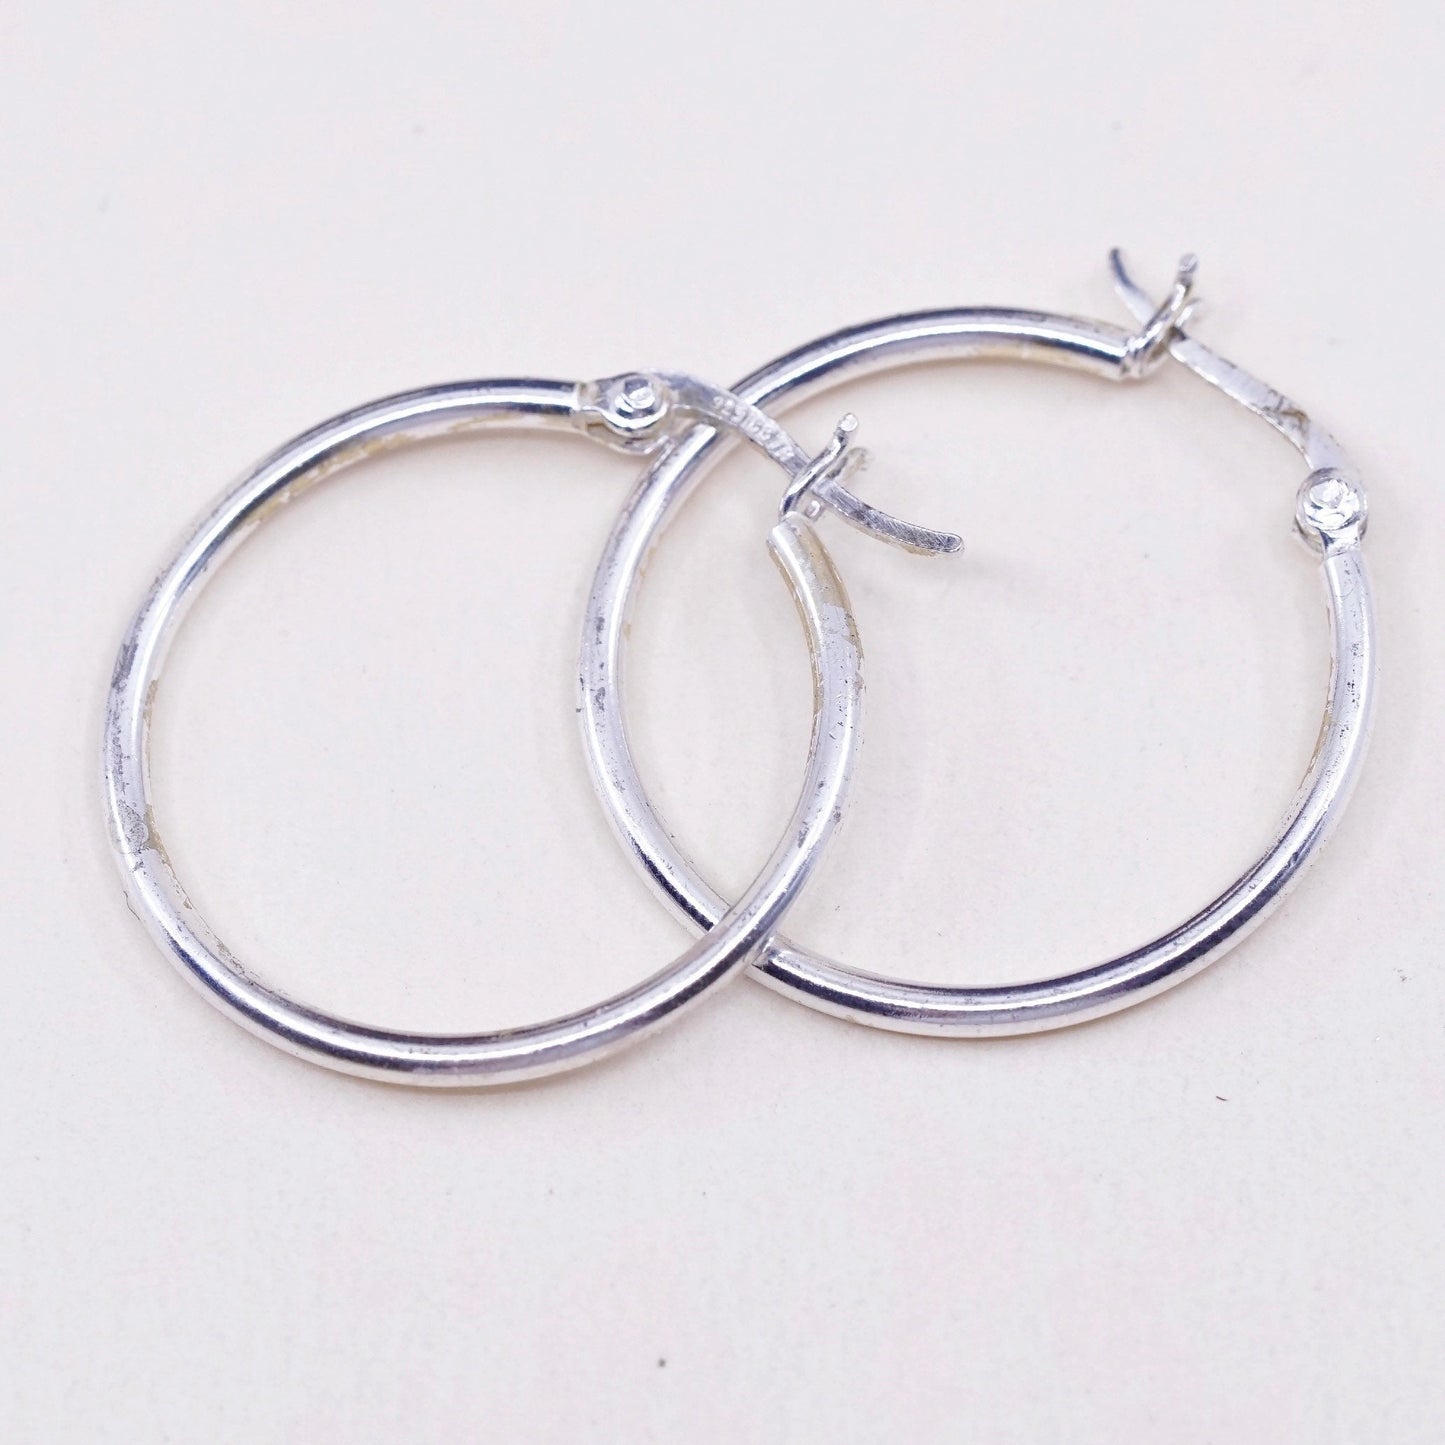 1”, Vintage sterling silver loop earrings, fashion minimalist primitive hoops